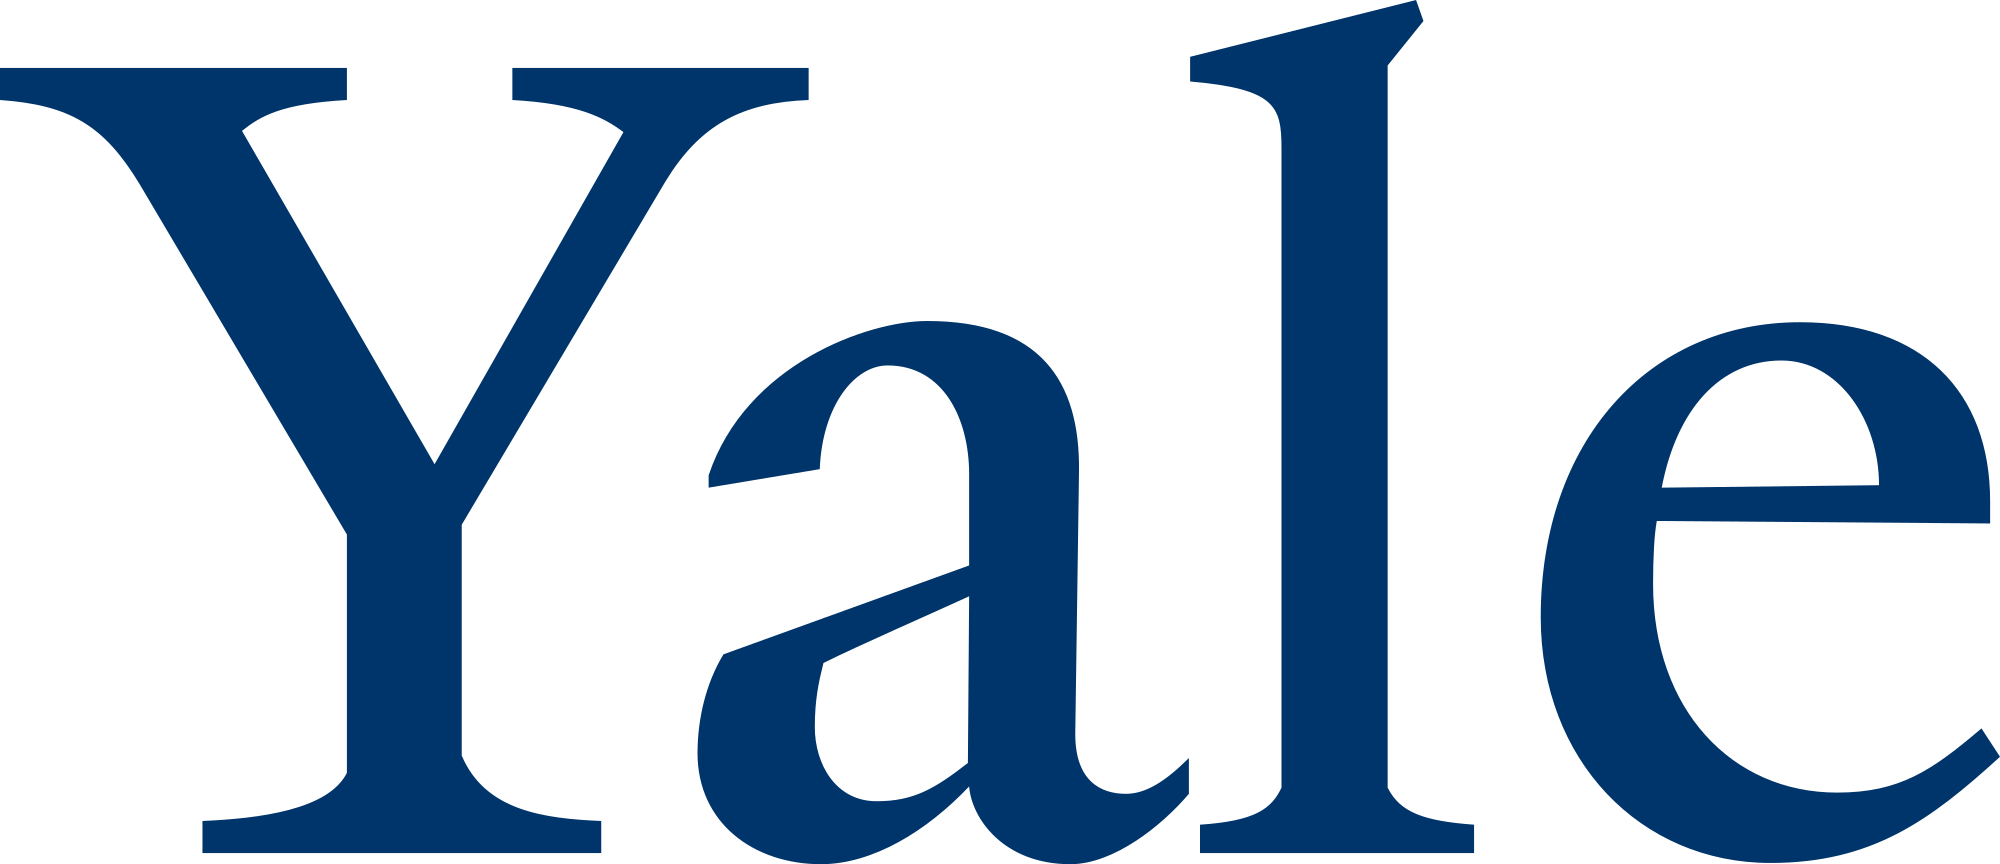 Yale Logo - File:Yale University logo.svg - Wikimedia Commons